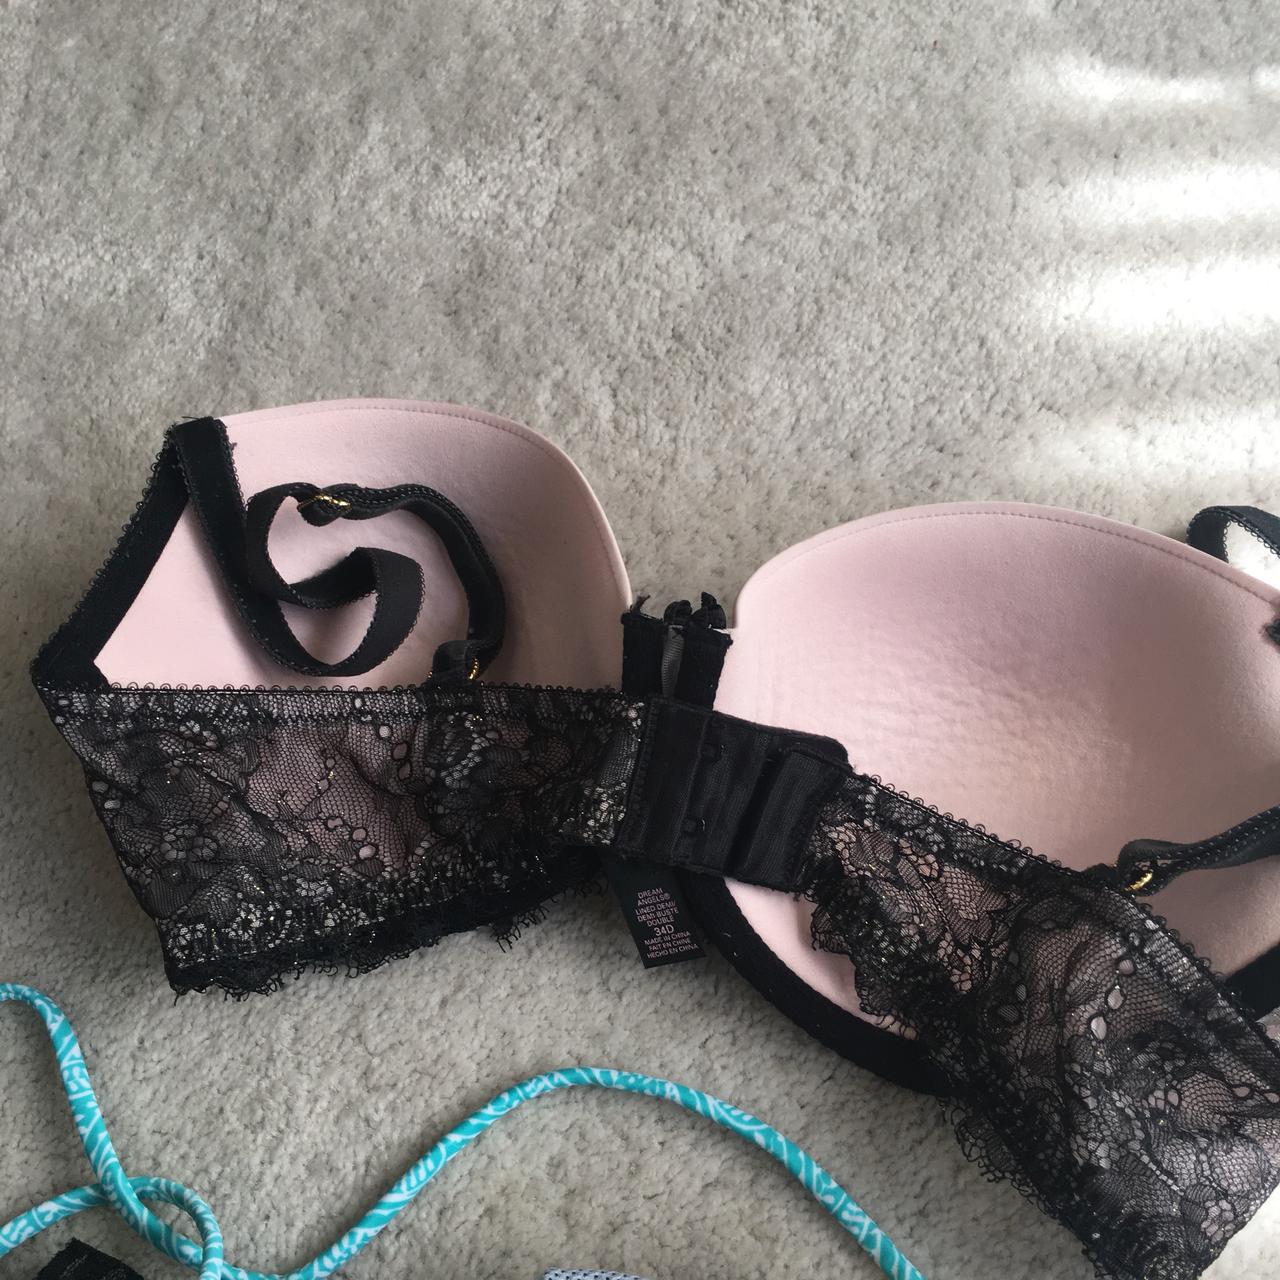 Set of 2 Victoria's Secret Bras - Black & Pink - Size 34D